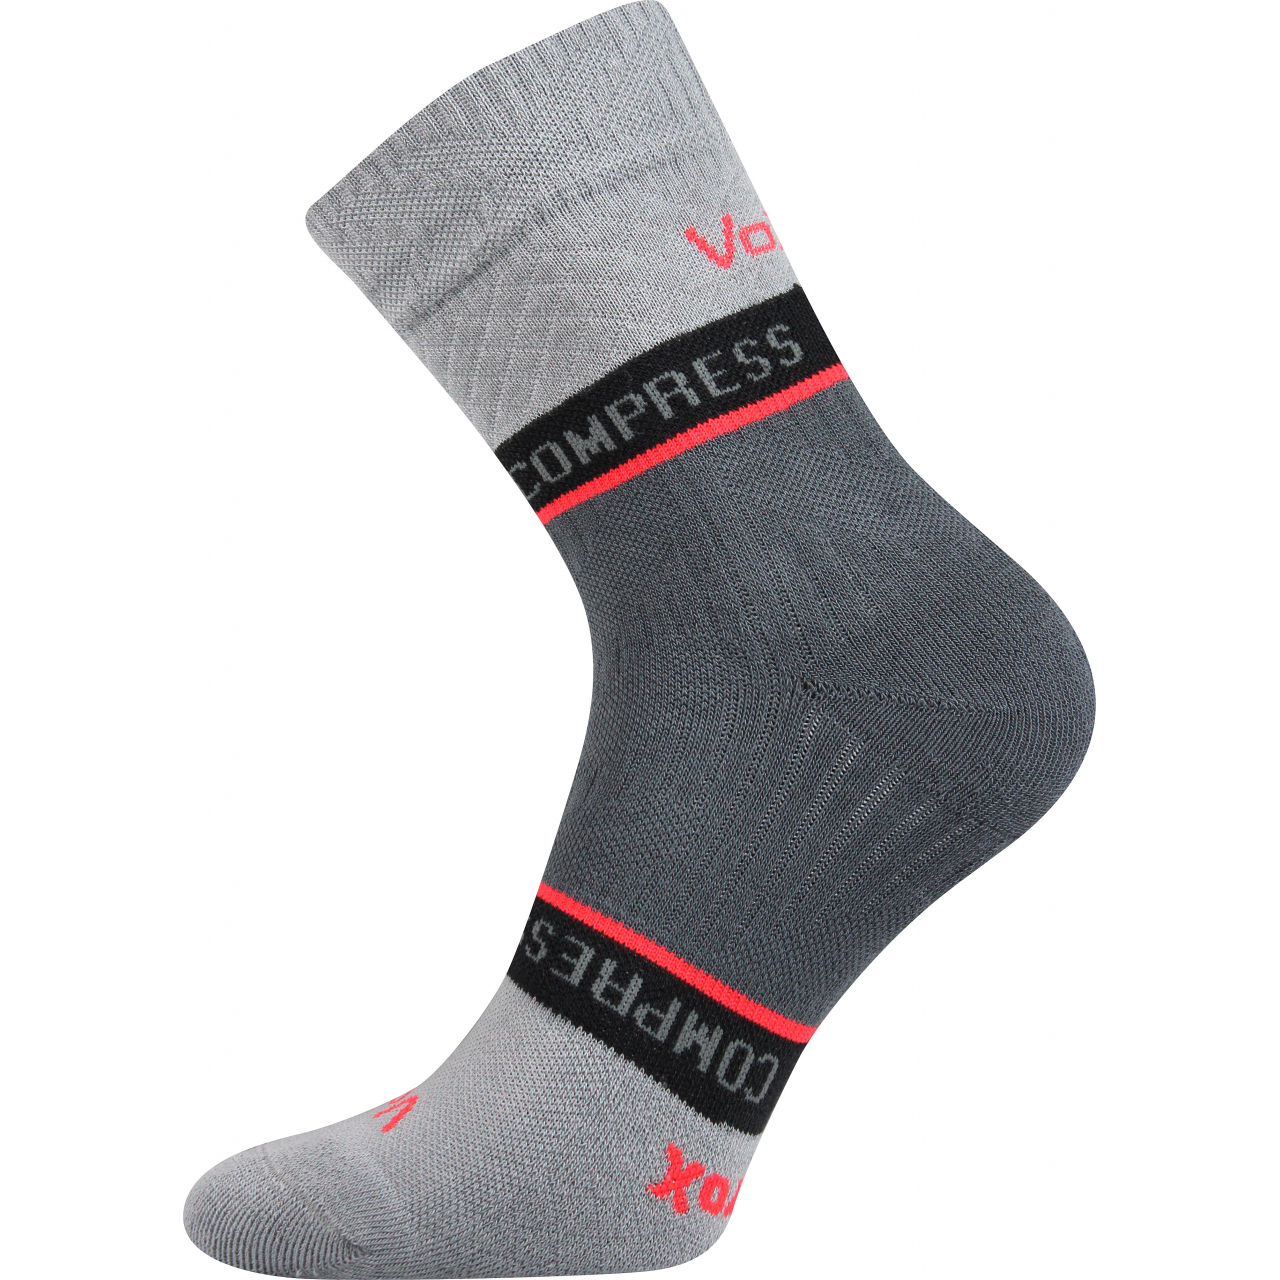 Ponožky kompresní Voxx Fixan - světle šedé, 35-38